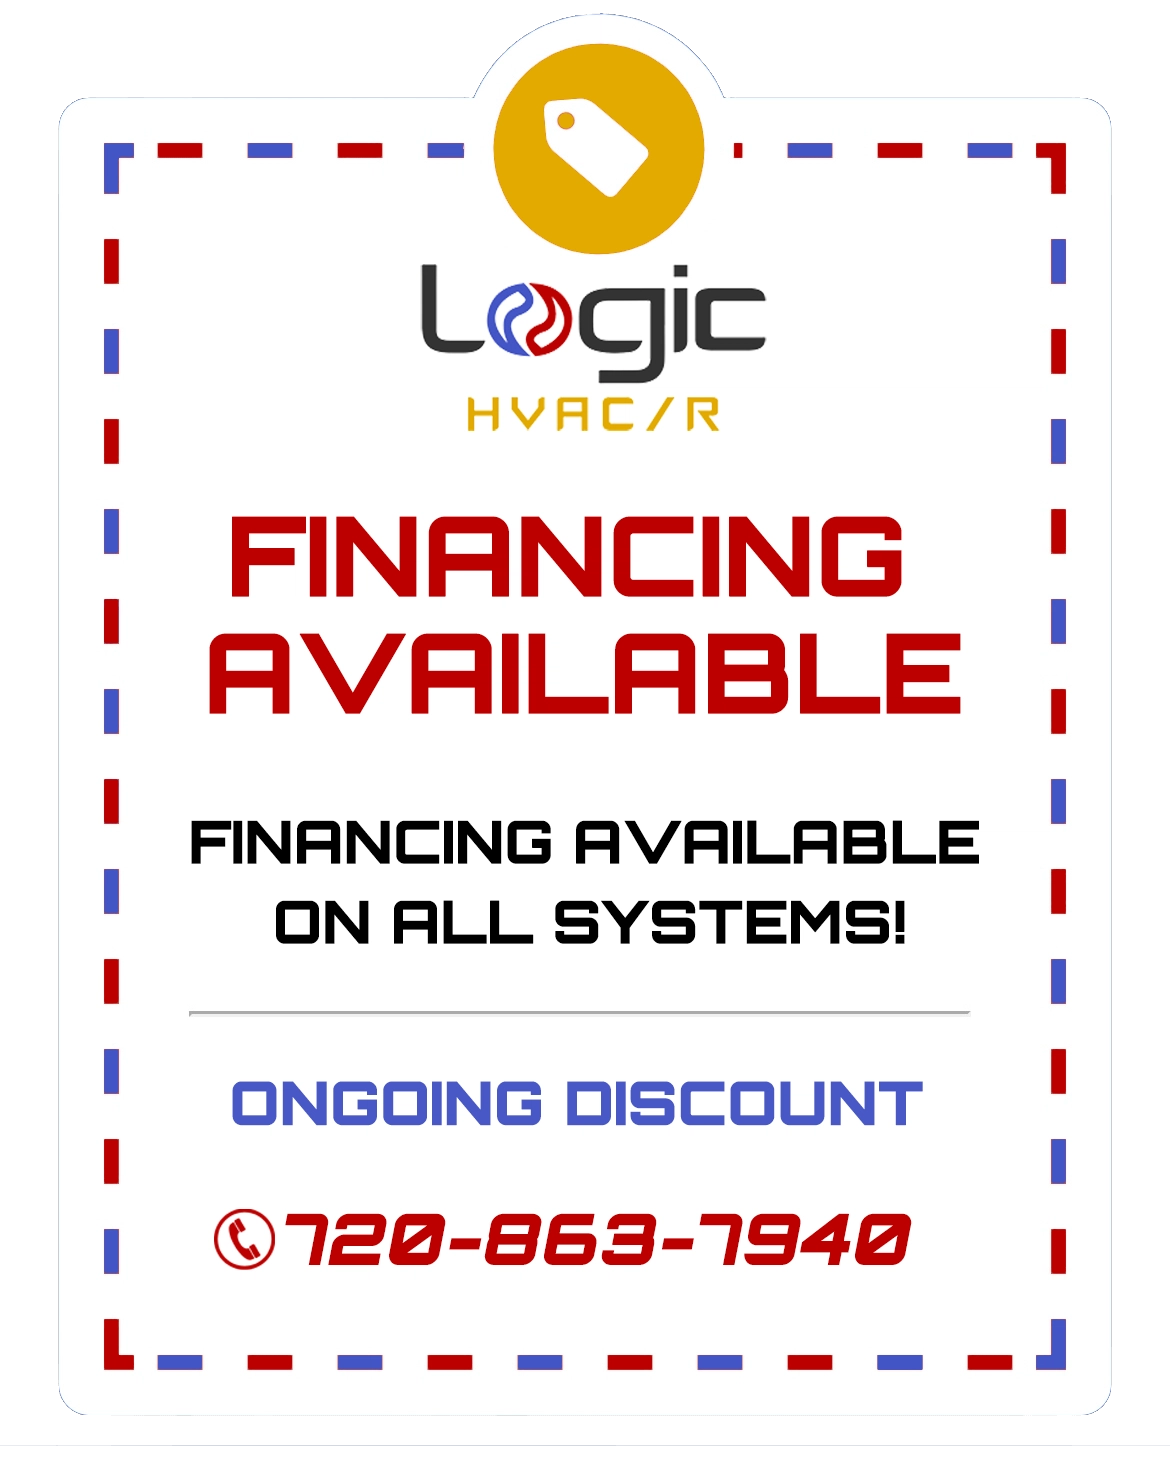 Logic HVAC/R Logo